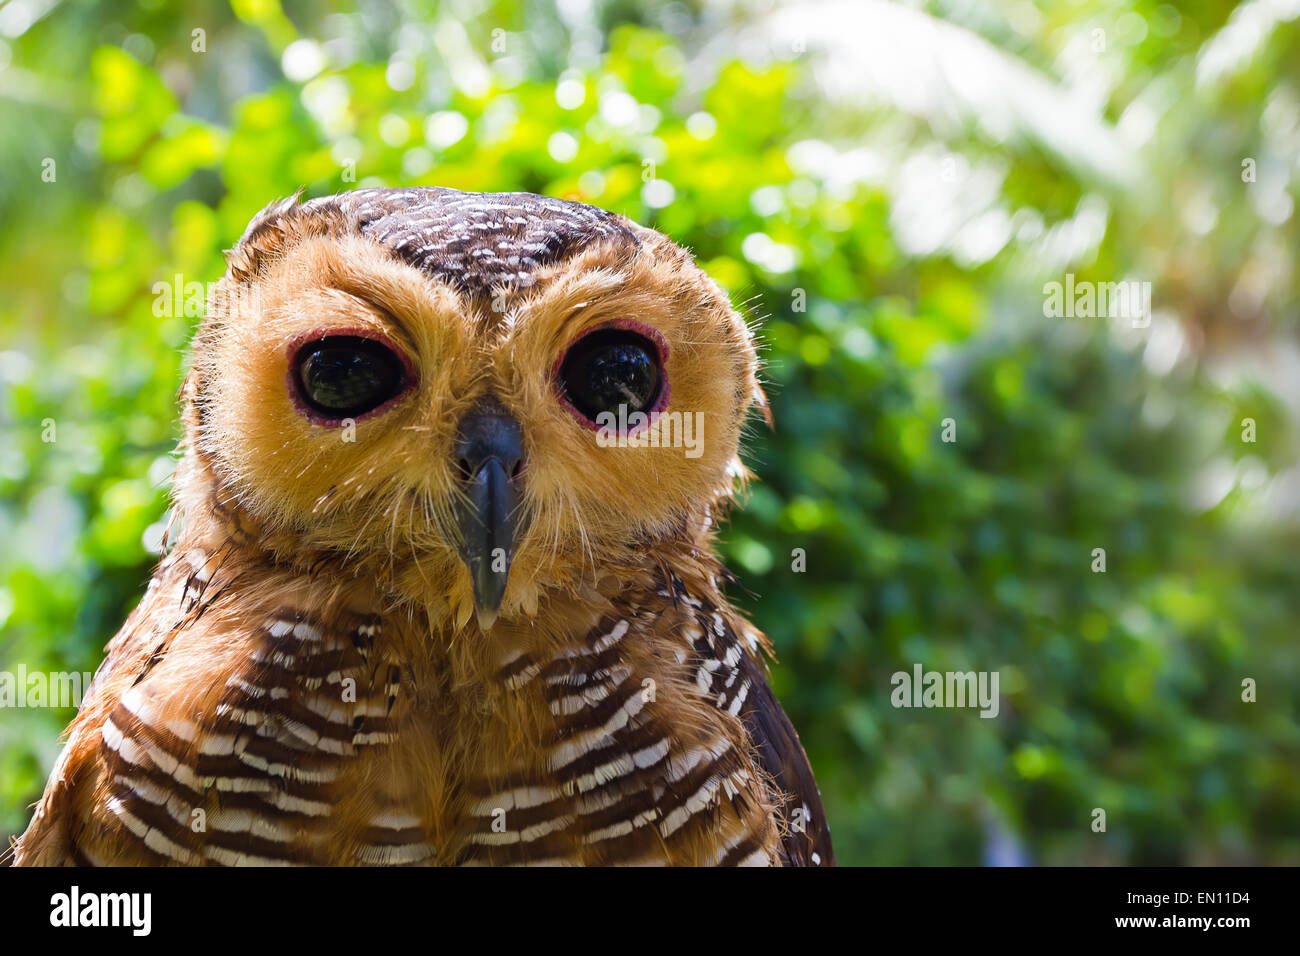 Owl looking at camera Stock Photo